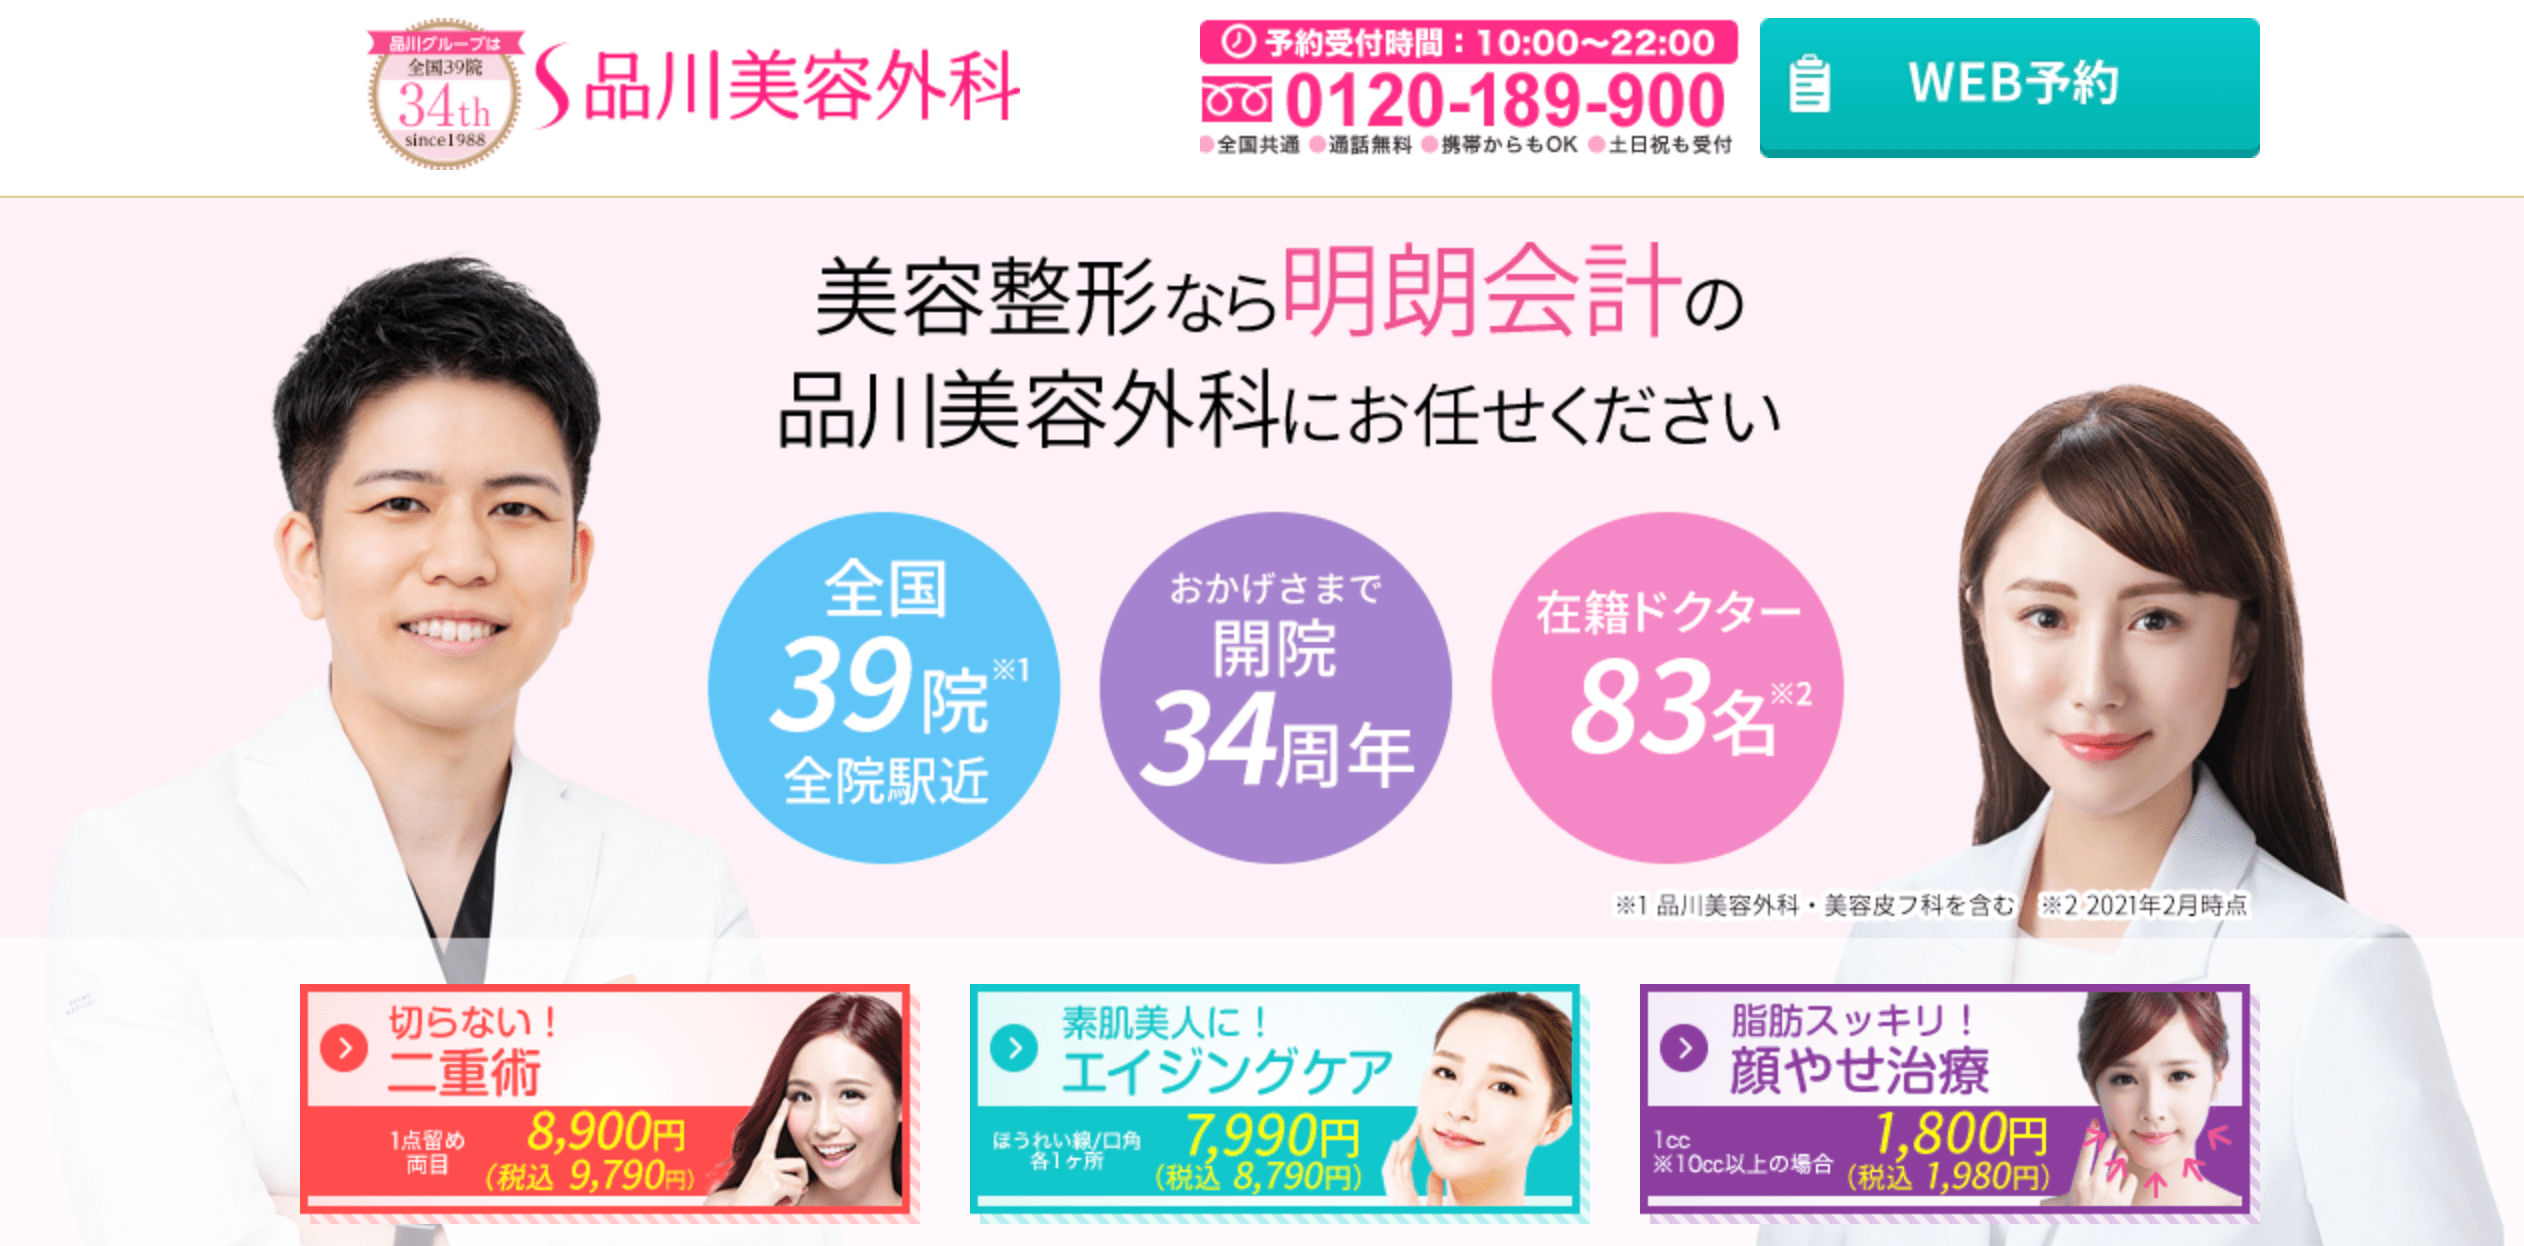 Shinagawa Skin Clinic